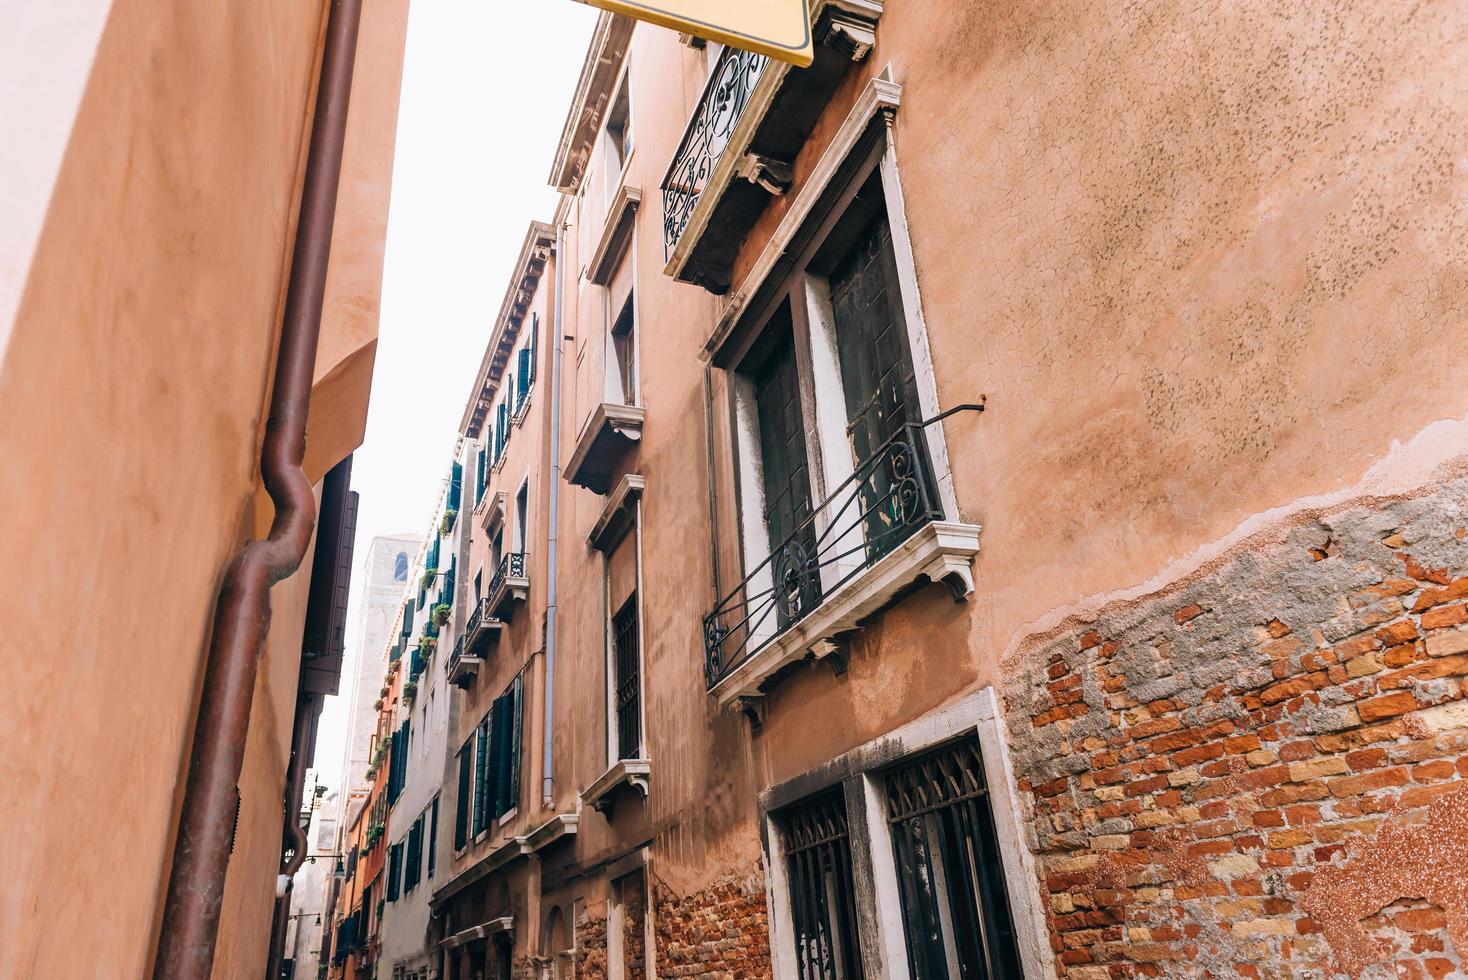 as antigas ruas de veneza da Itália foto